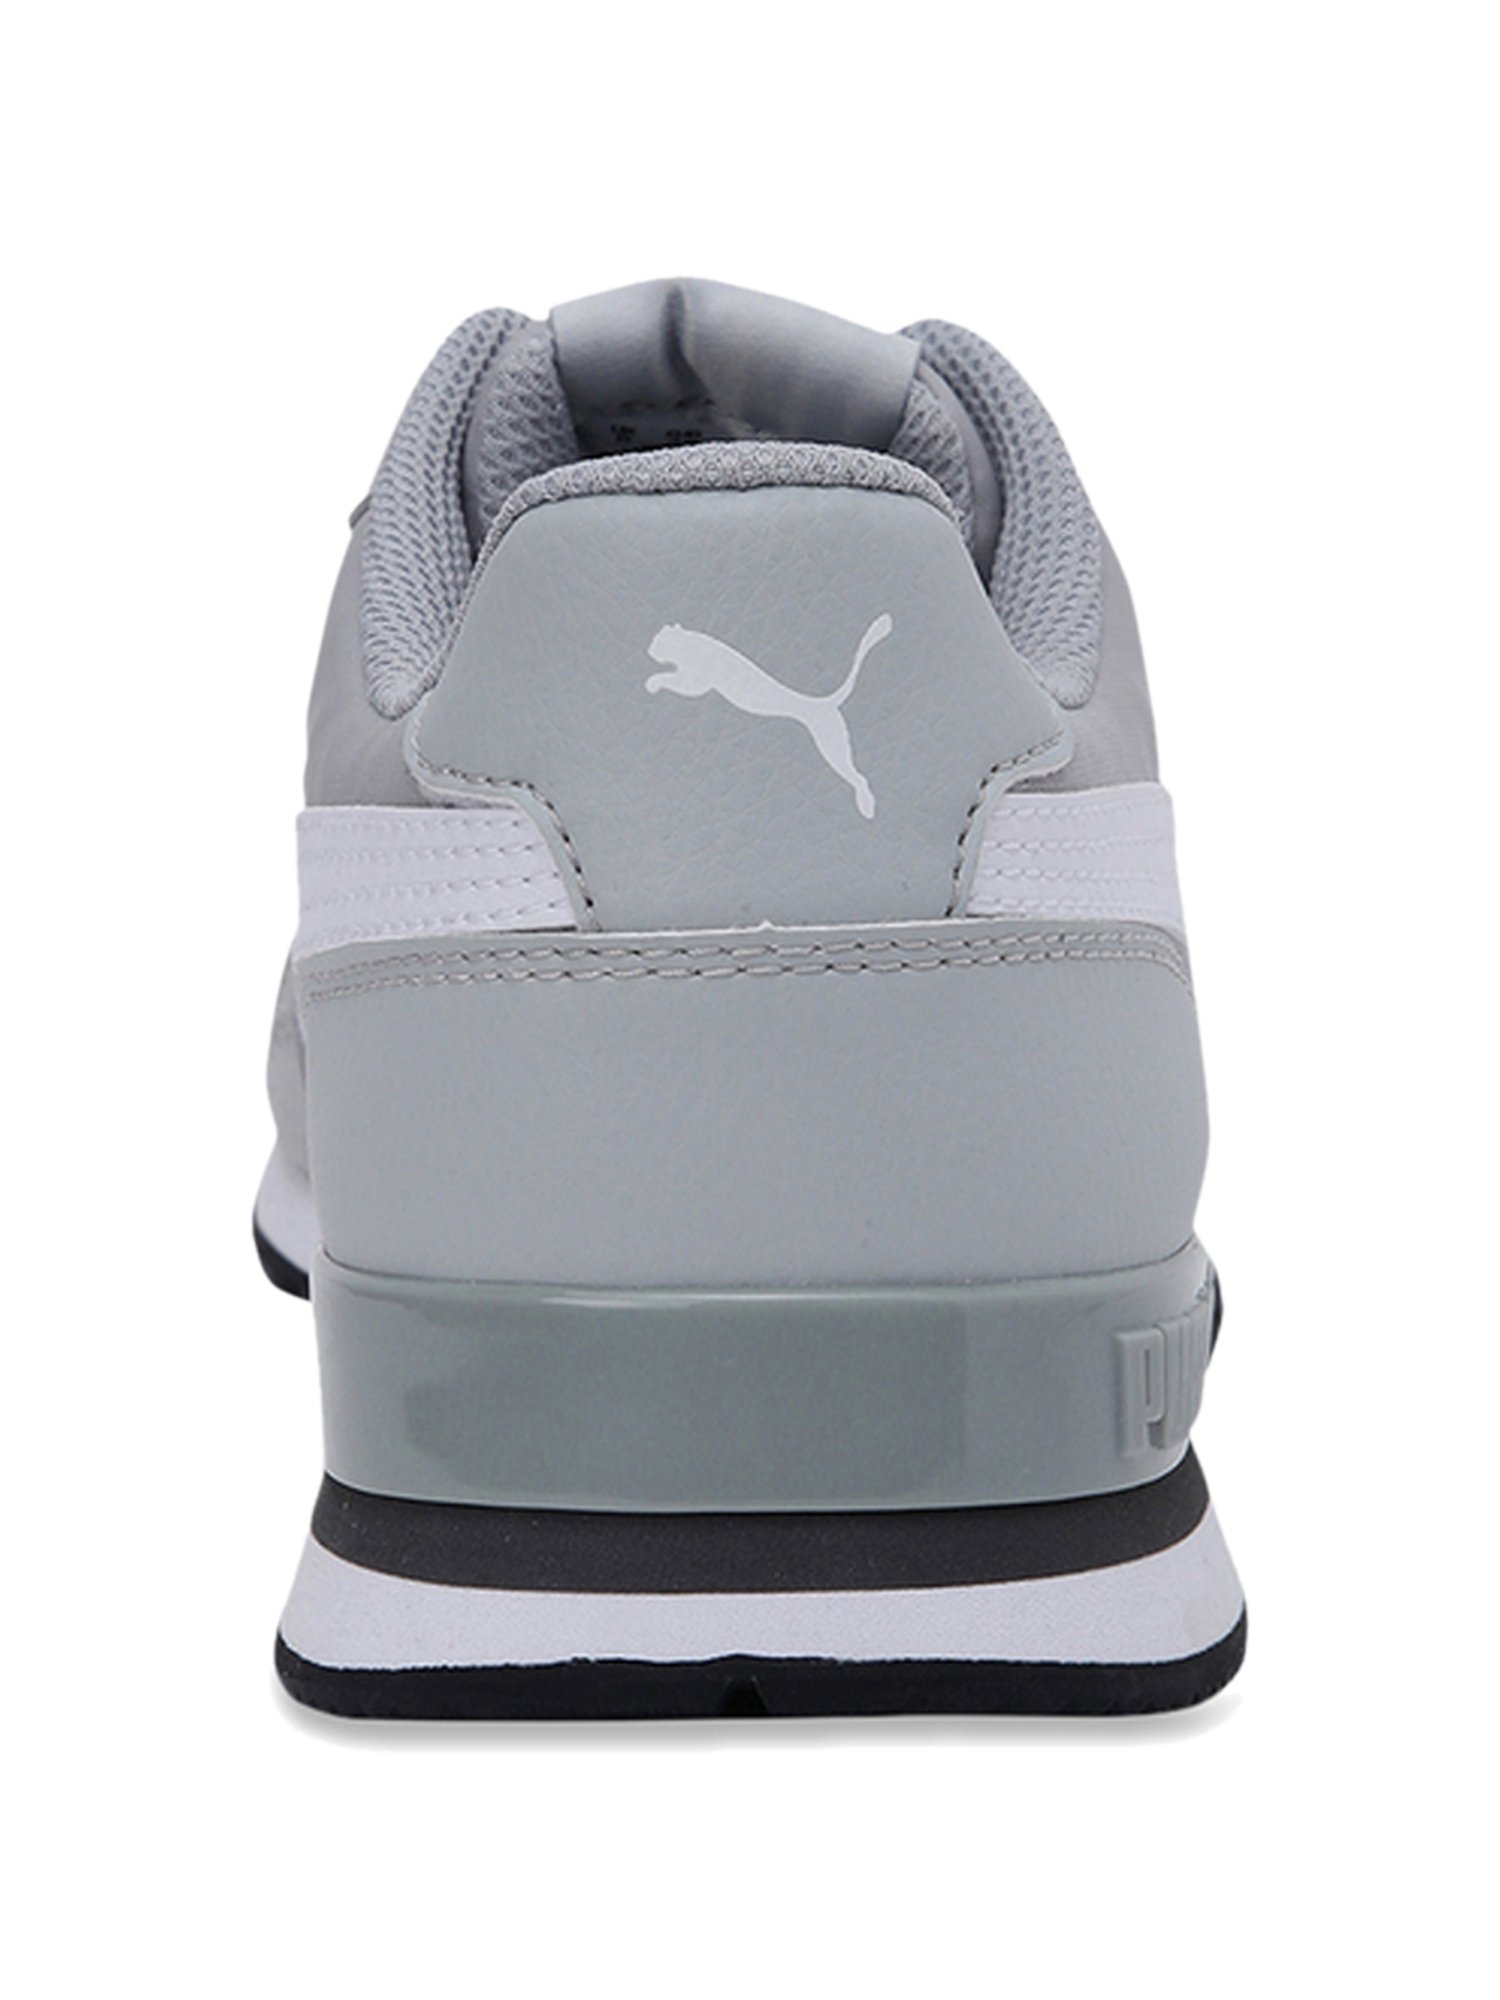 Buy Puma Unisex-Adult ST Runner v2 Full L Peacoat White Sneaker - 4 UK  (36527705) at Amazon.in